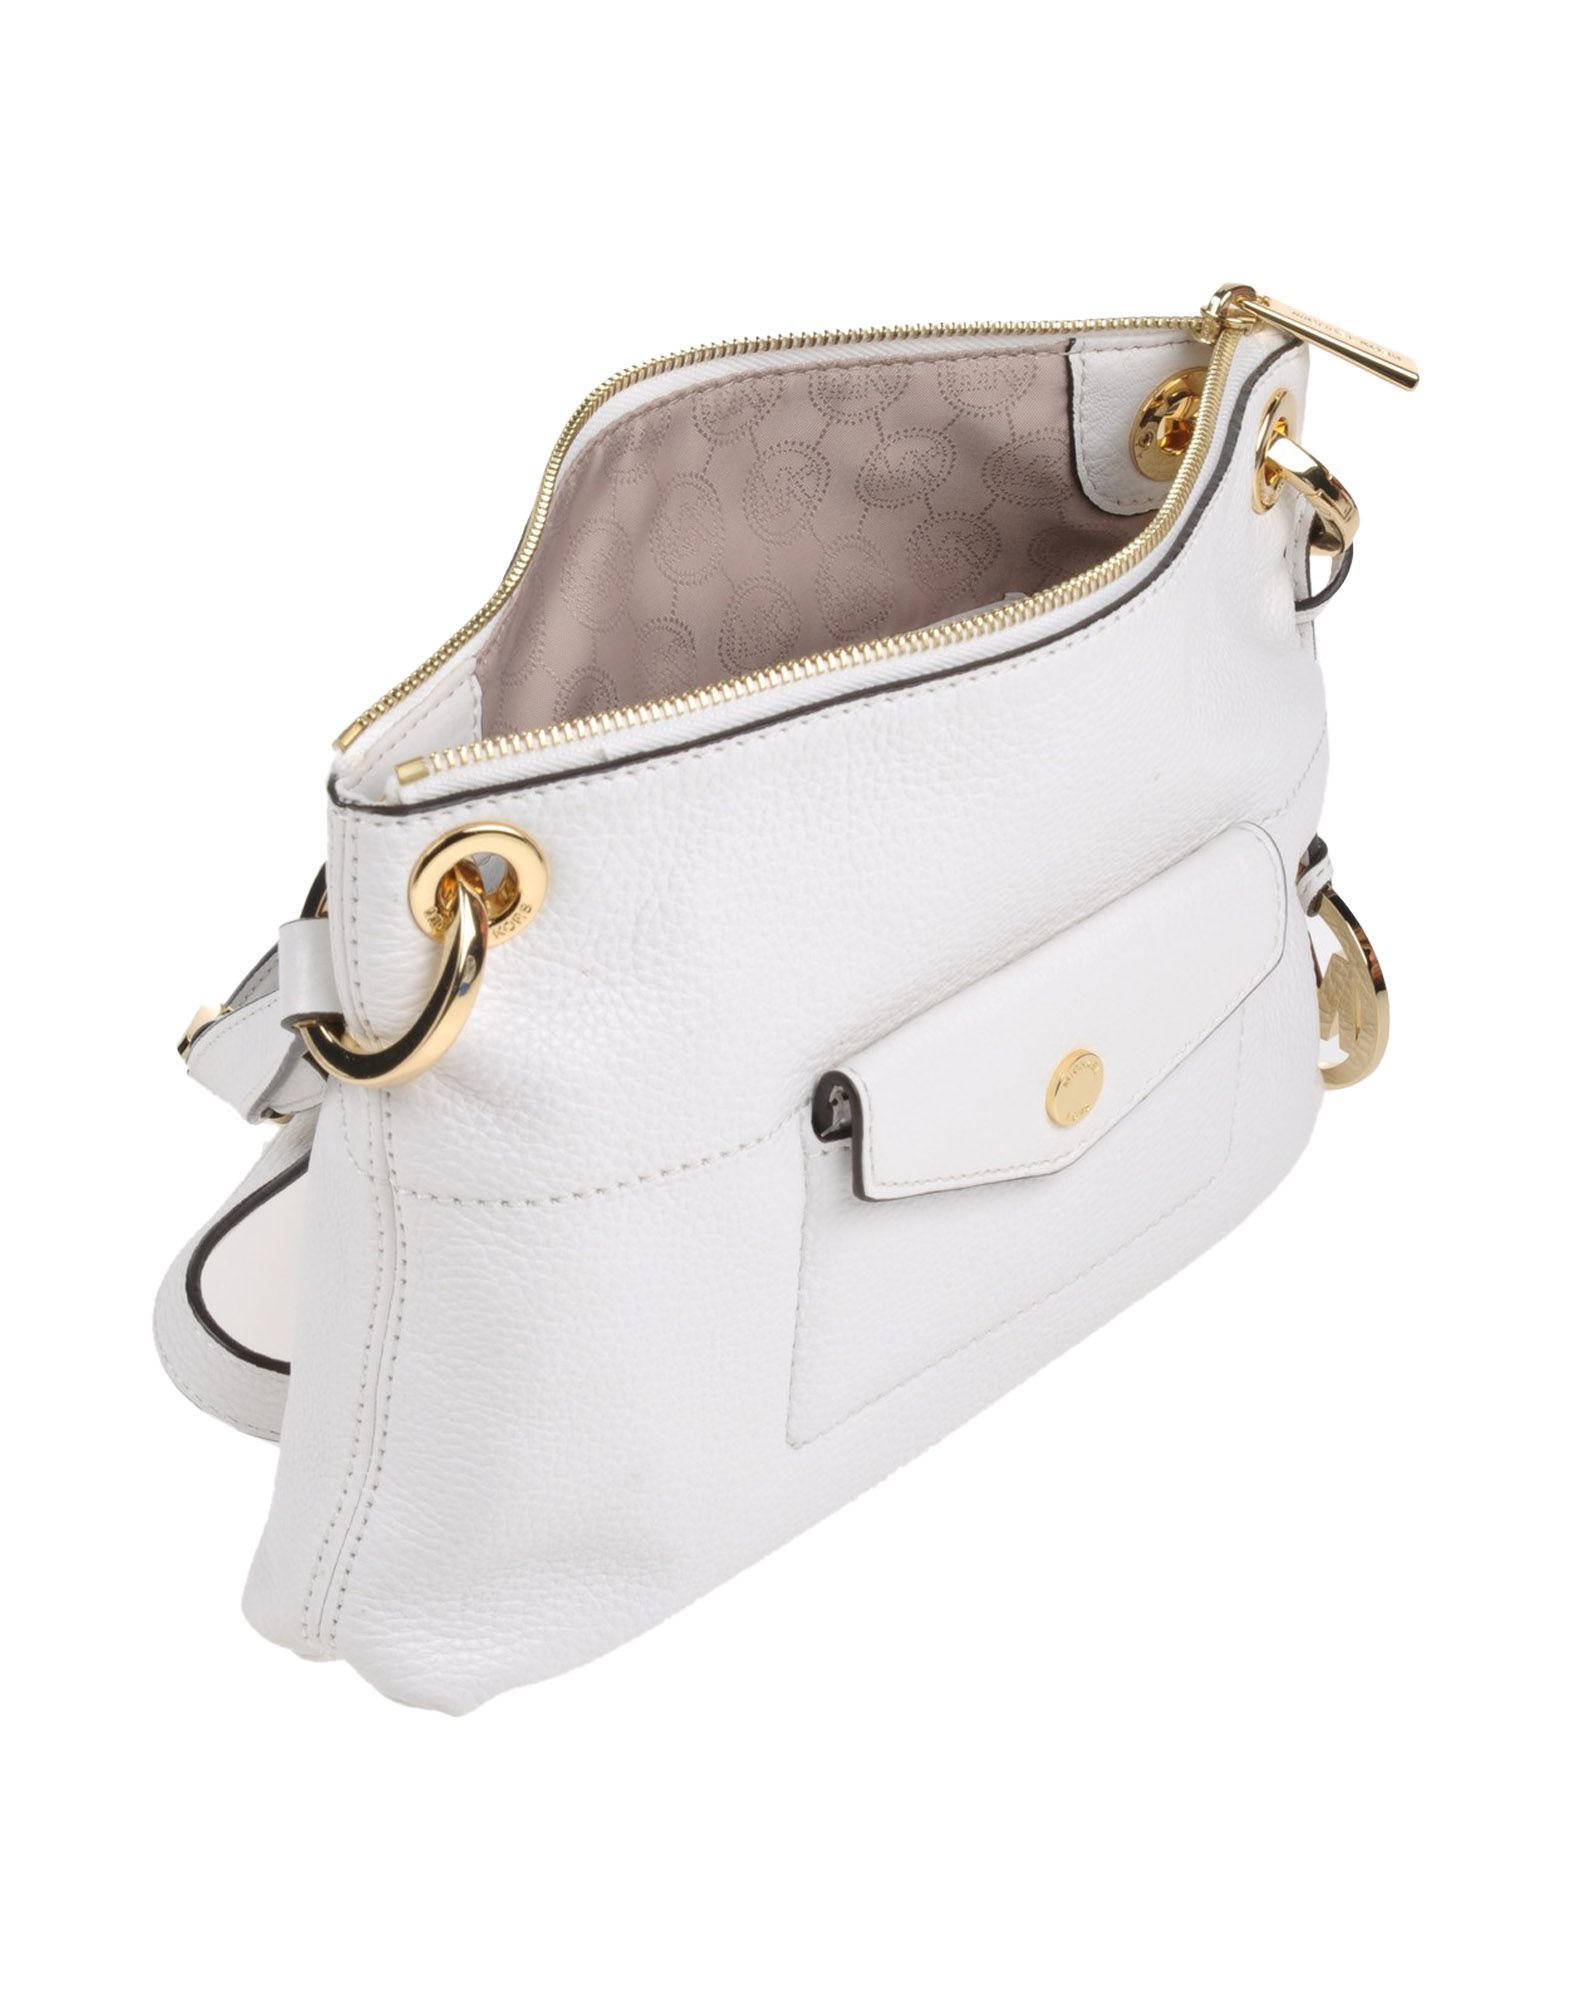 White Cross Over Bag. MKF Crossbody Bags for Women, Wristlet Strap – PU Leather Shoulder Handbag ...